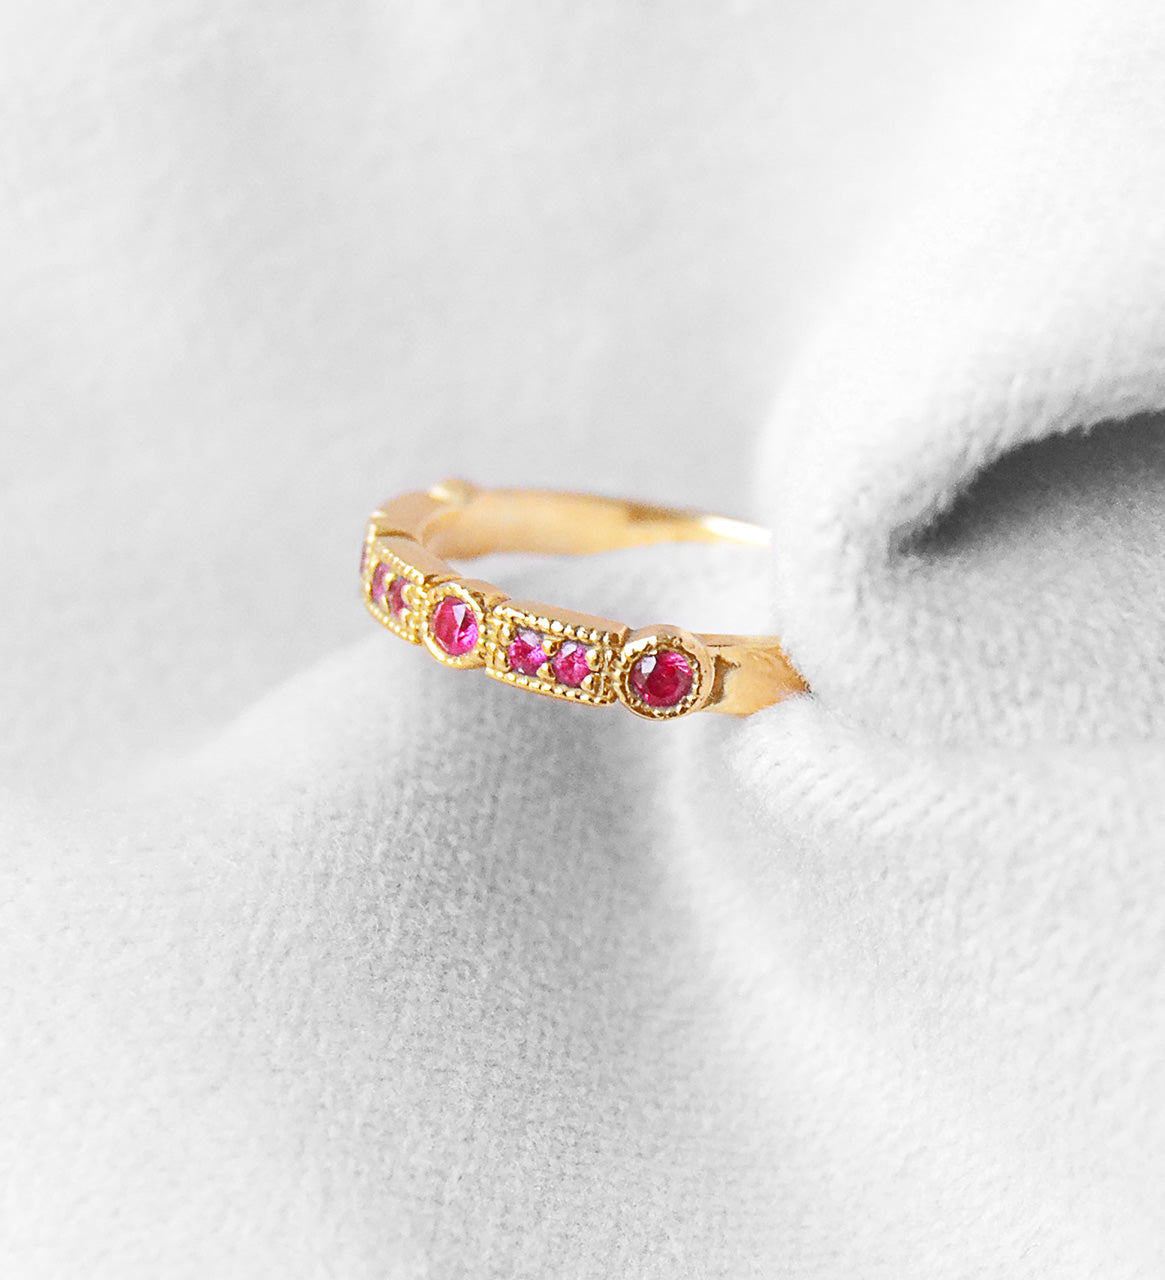 Trine Ji Hot Pink Ring - 14 Karat Gold Pink Sapphires